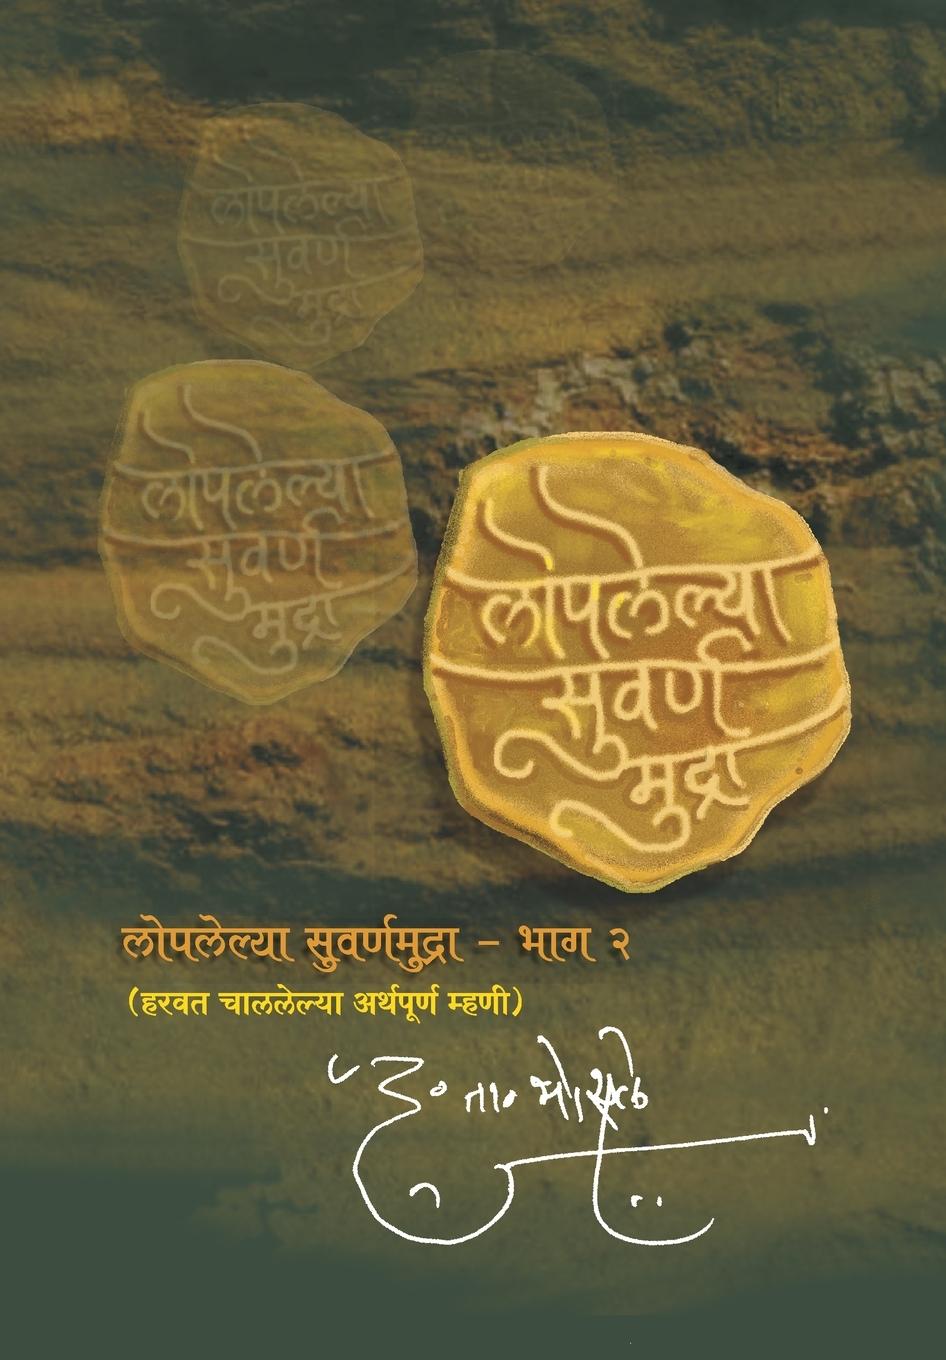 Loplelya Swarna Mudra - Bhosale, D. T.